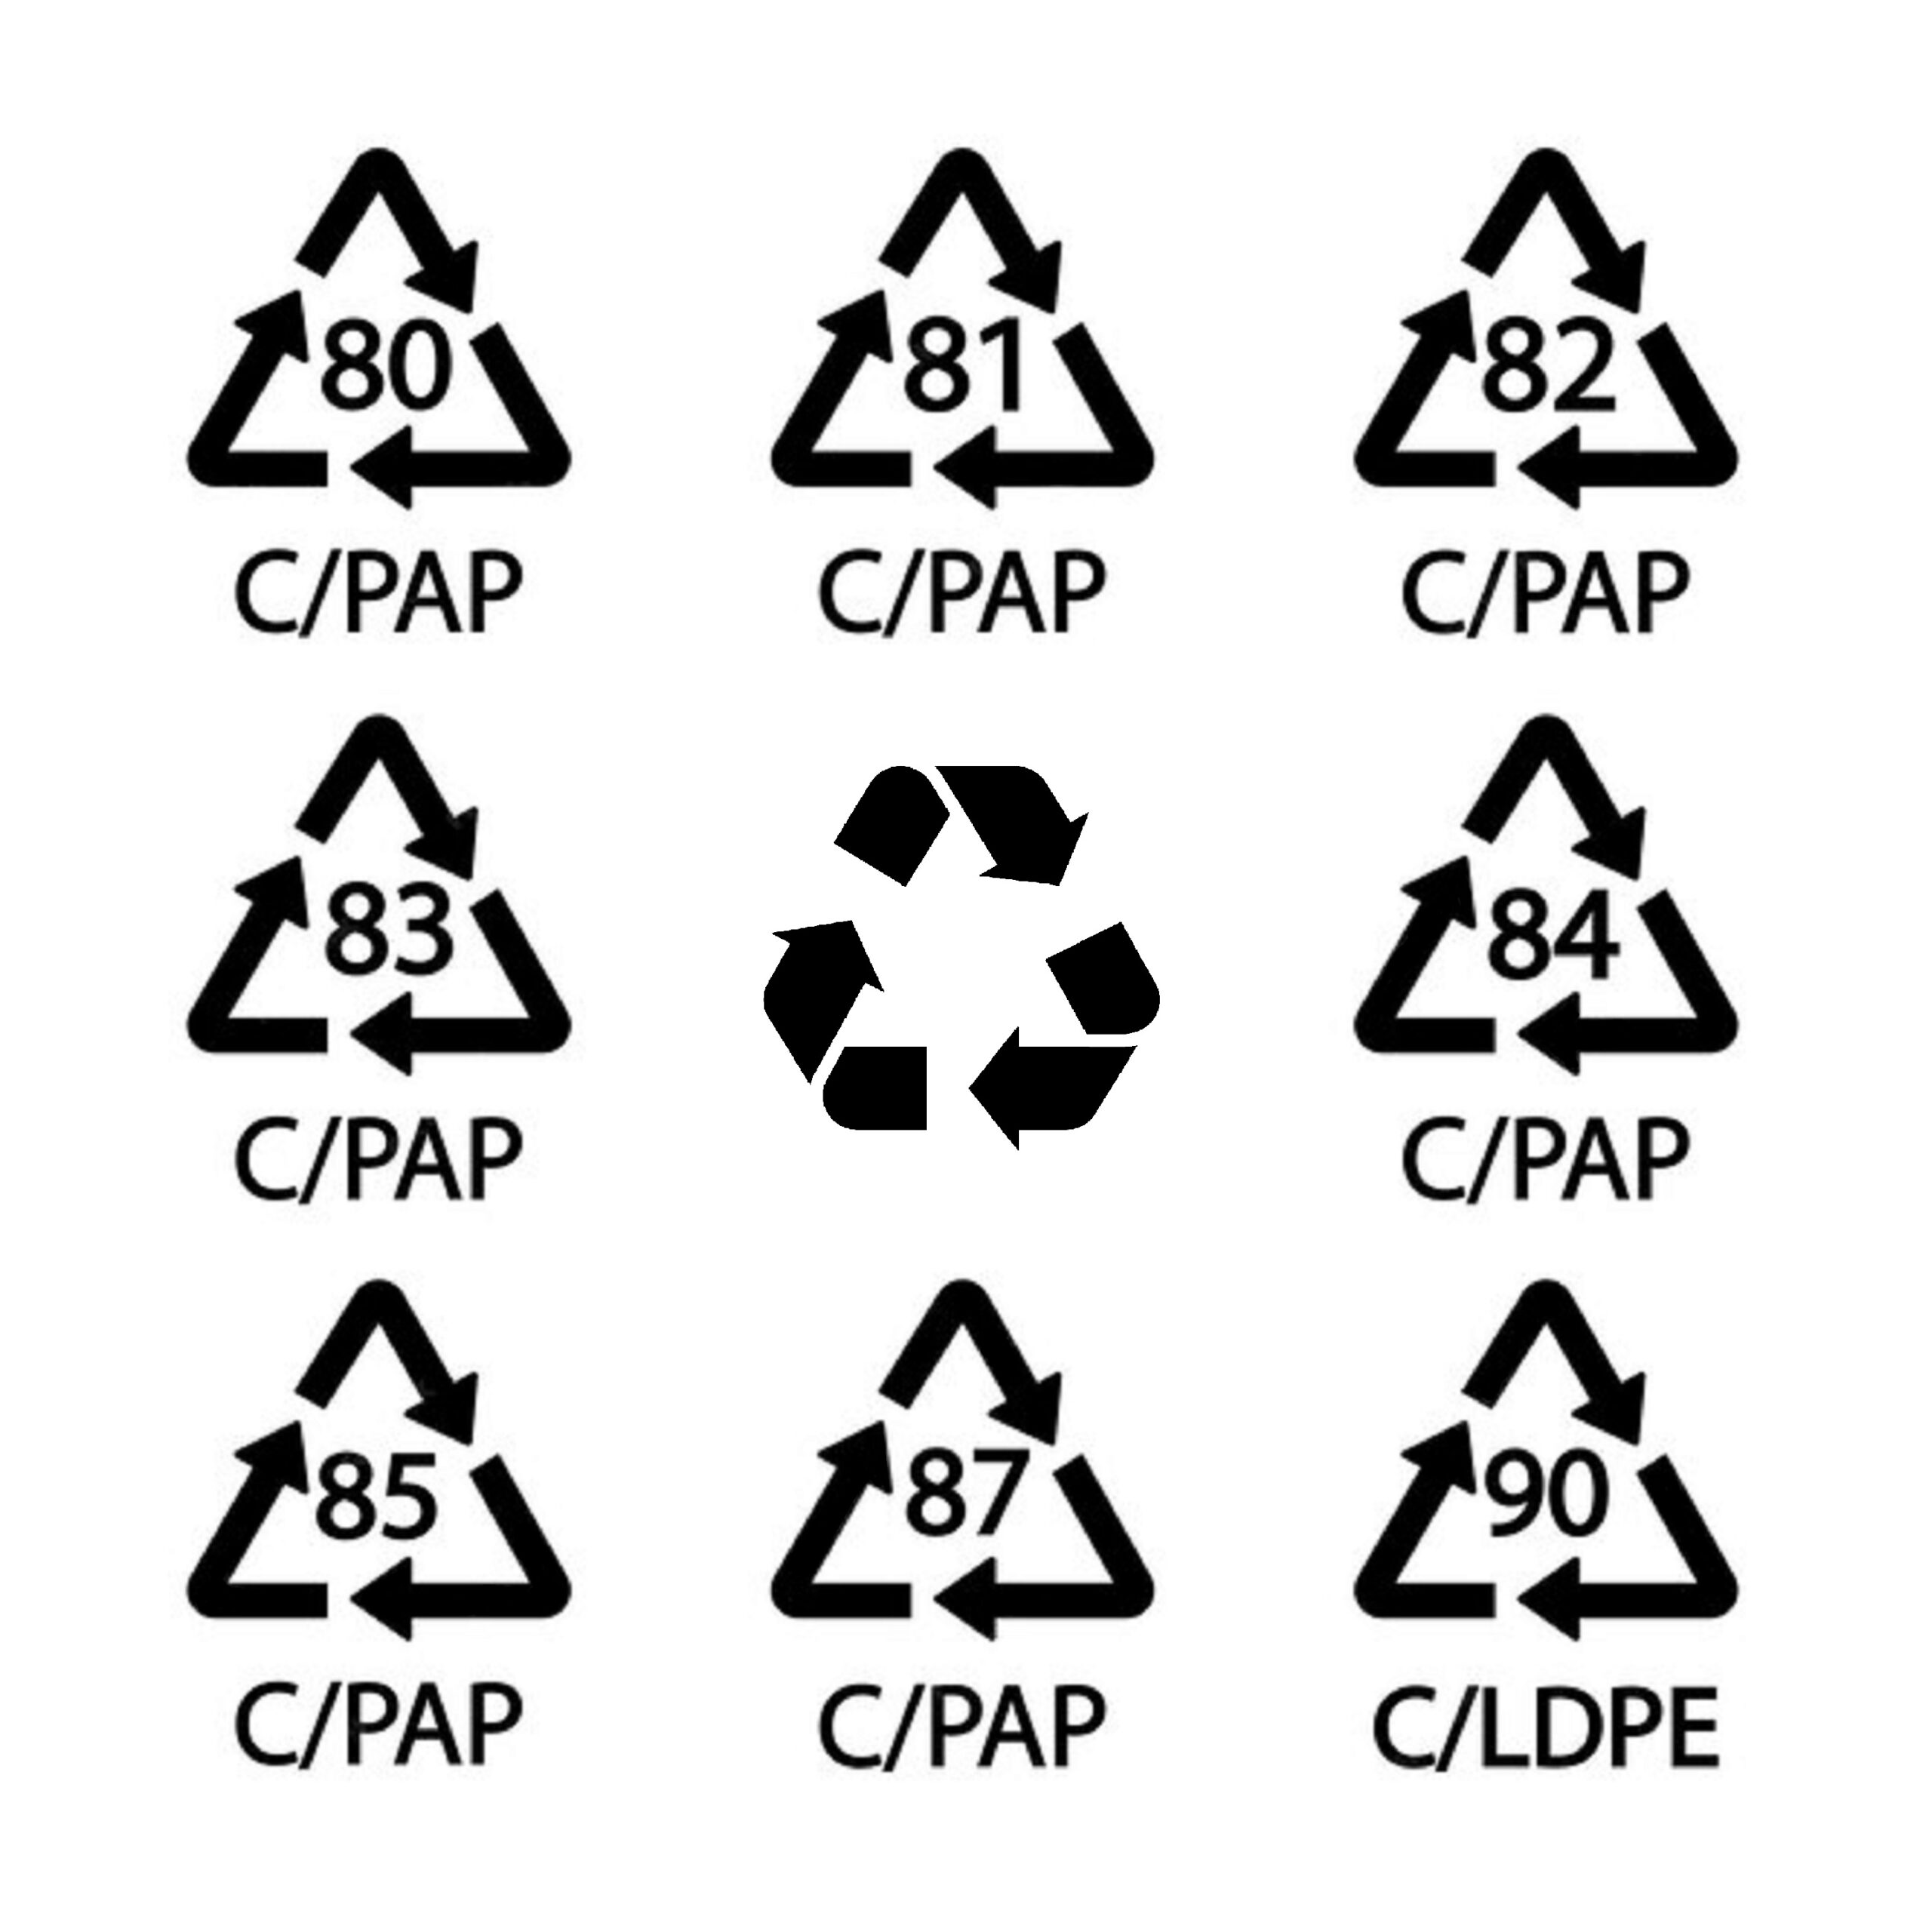 80/C/PAP, 81/C/PAP, 82/C/PAP, 83/C/PAP, 84/C/PAP, 85/C/PAP, 87/C/PAP, 90/C/LDPE